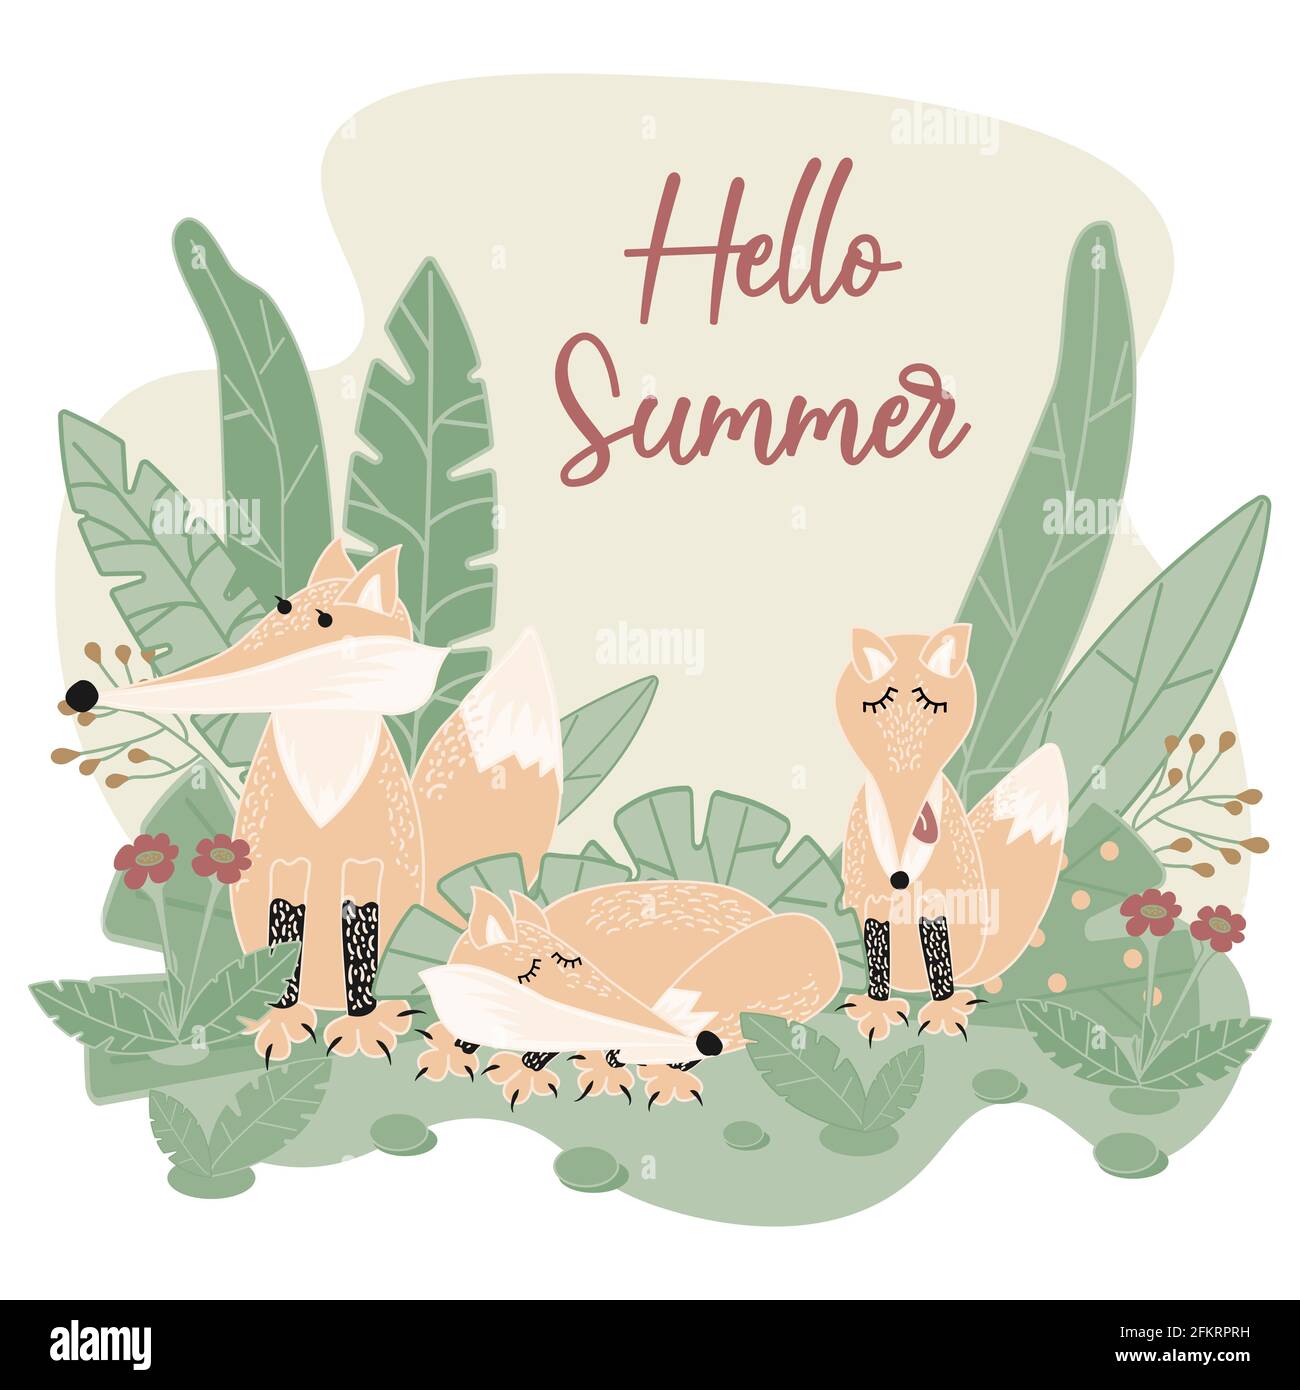 Eine Familie wilder Füchse, die im Wald leben. Männliche und weibliche Füchse mit einem Jungen auf dem grünen Gras und der Inschrift Hello Summer. Waldtiere. Stock Vektor